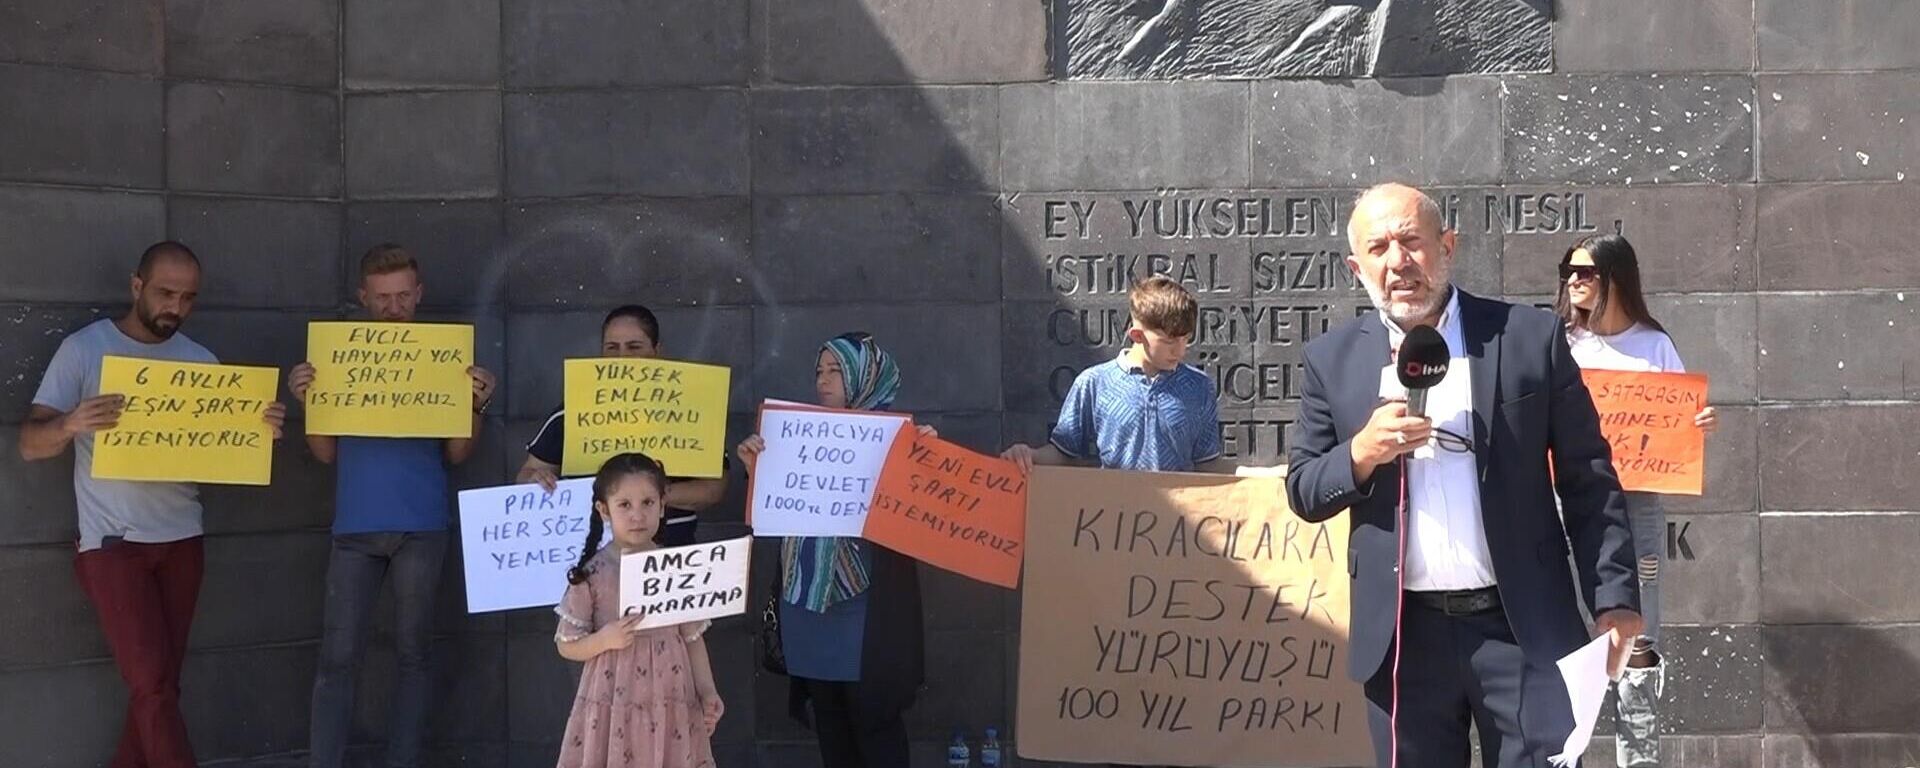 Gaziantep’te bir grup kiracı, ellerine aldıkları pankartlarla 1 saat boyunca sessizce bekleyerek, kiralara fahiş zamlar yapan ev sahiplerini protesto etti. Geçinemeyen vatandaşlar, kira artışlarında yaşanan yükselişin durmasını talep etti. - Sputnik Türkiye, 1920, 03.10.2022